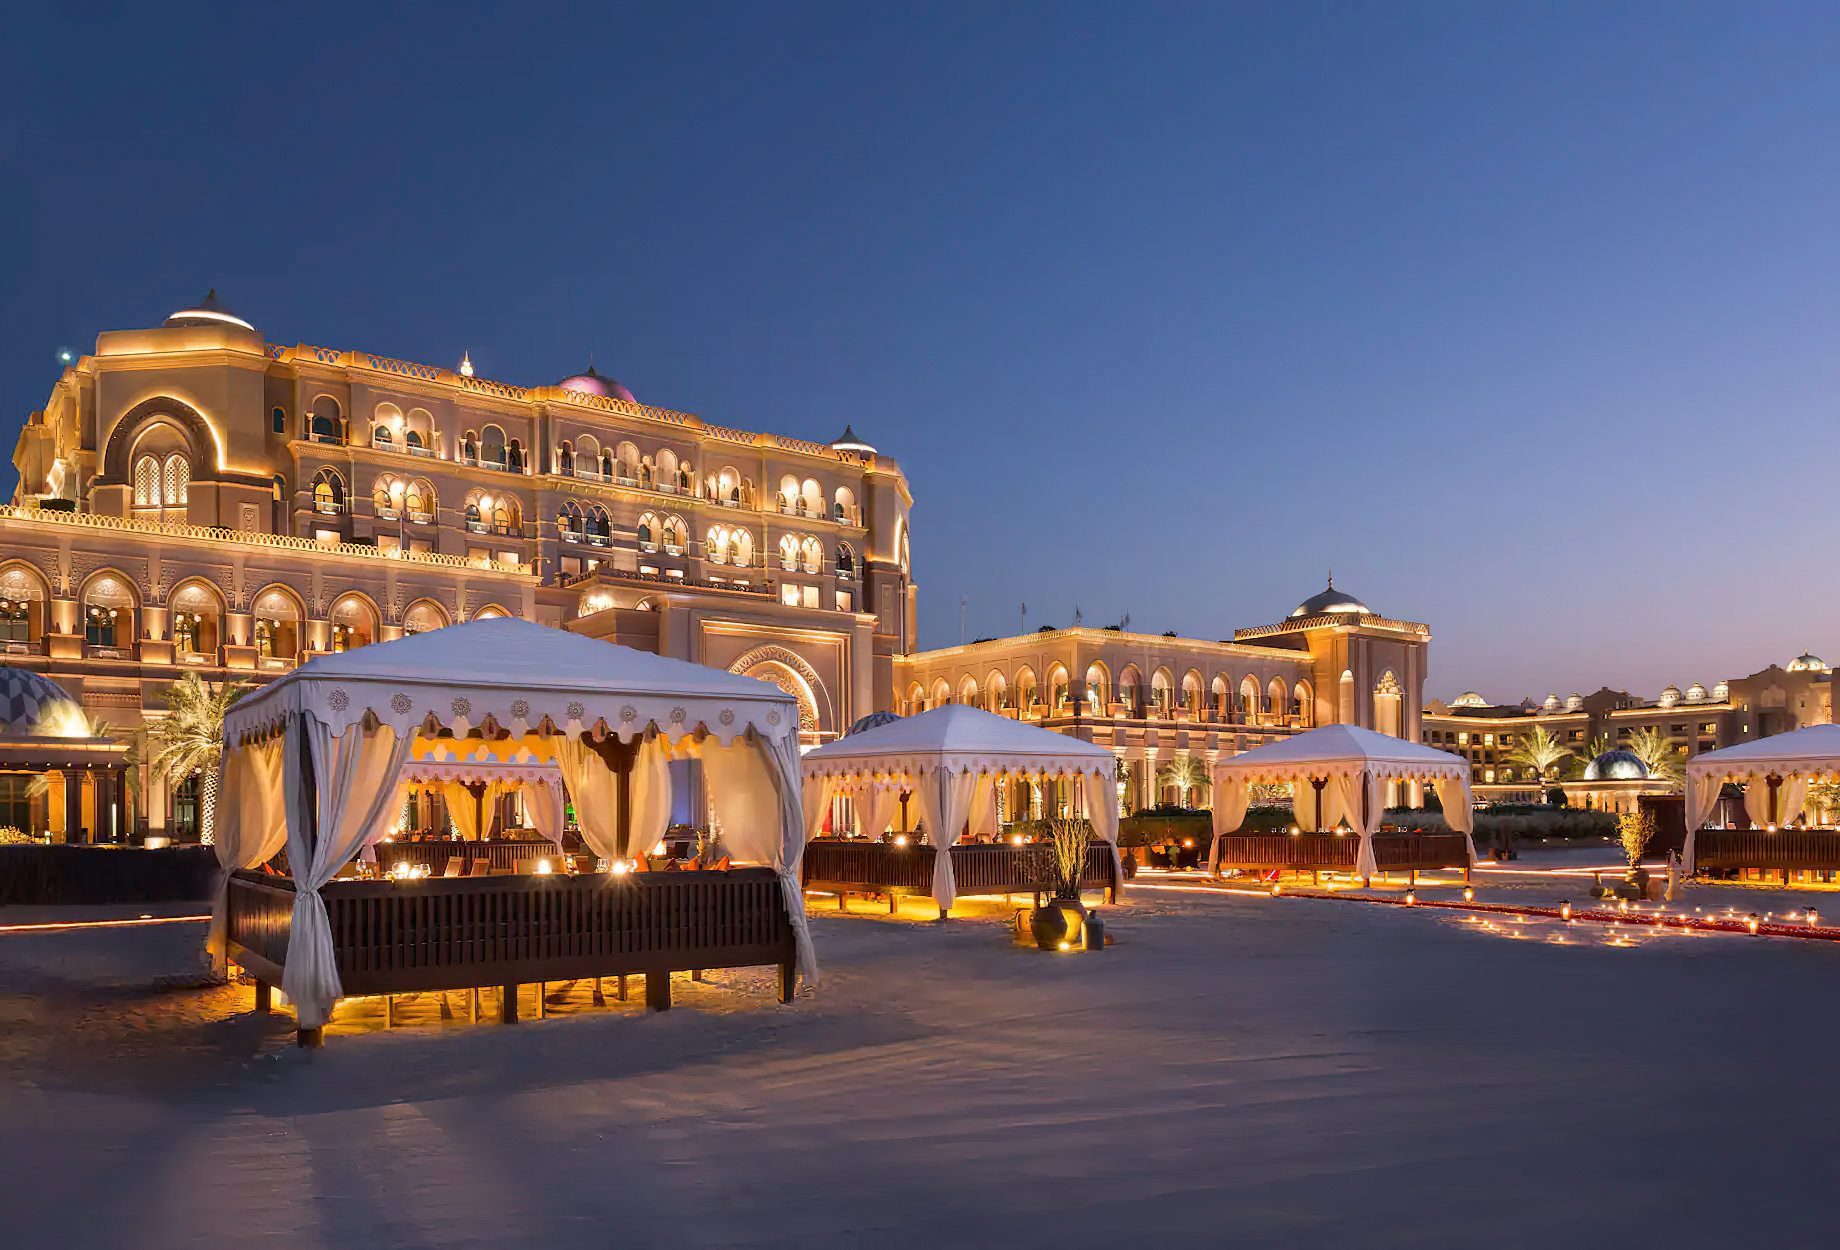 Emirates Palace Abu Dhabi Hotel – Abu Dhabi, UAE – Beach Cabana Dining Palace Night View